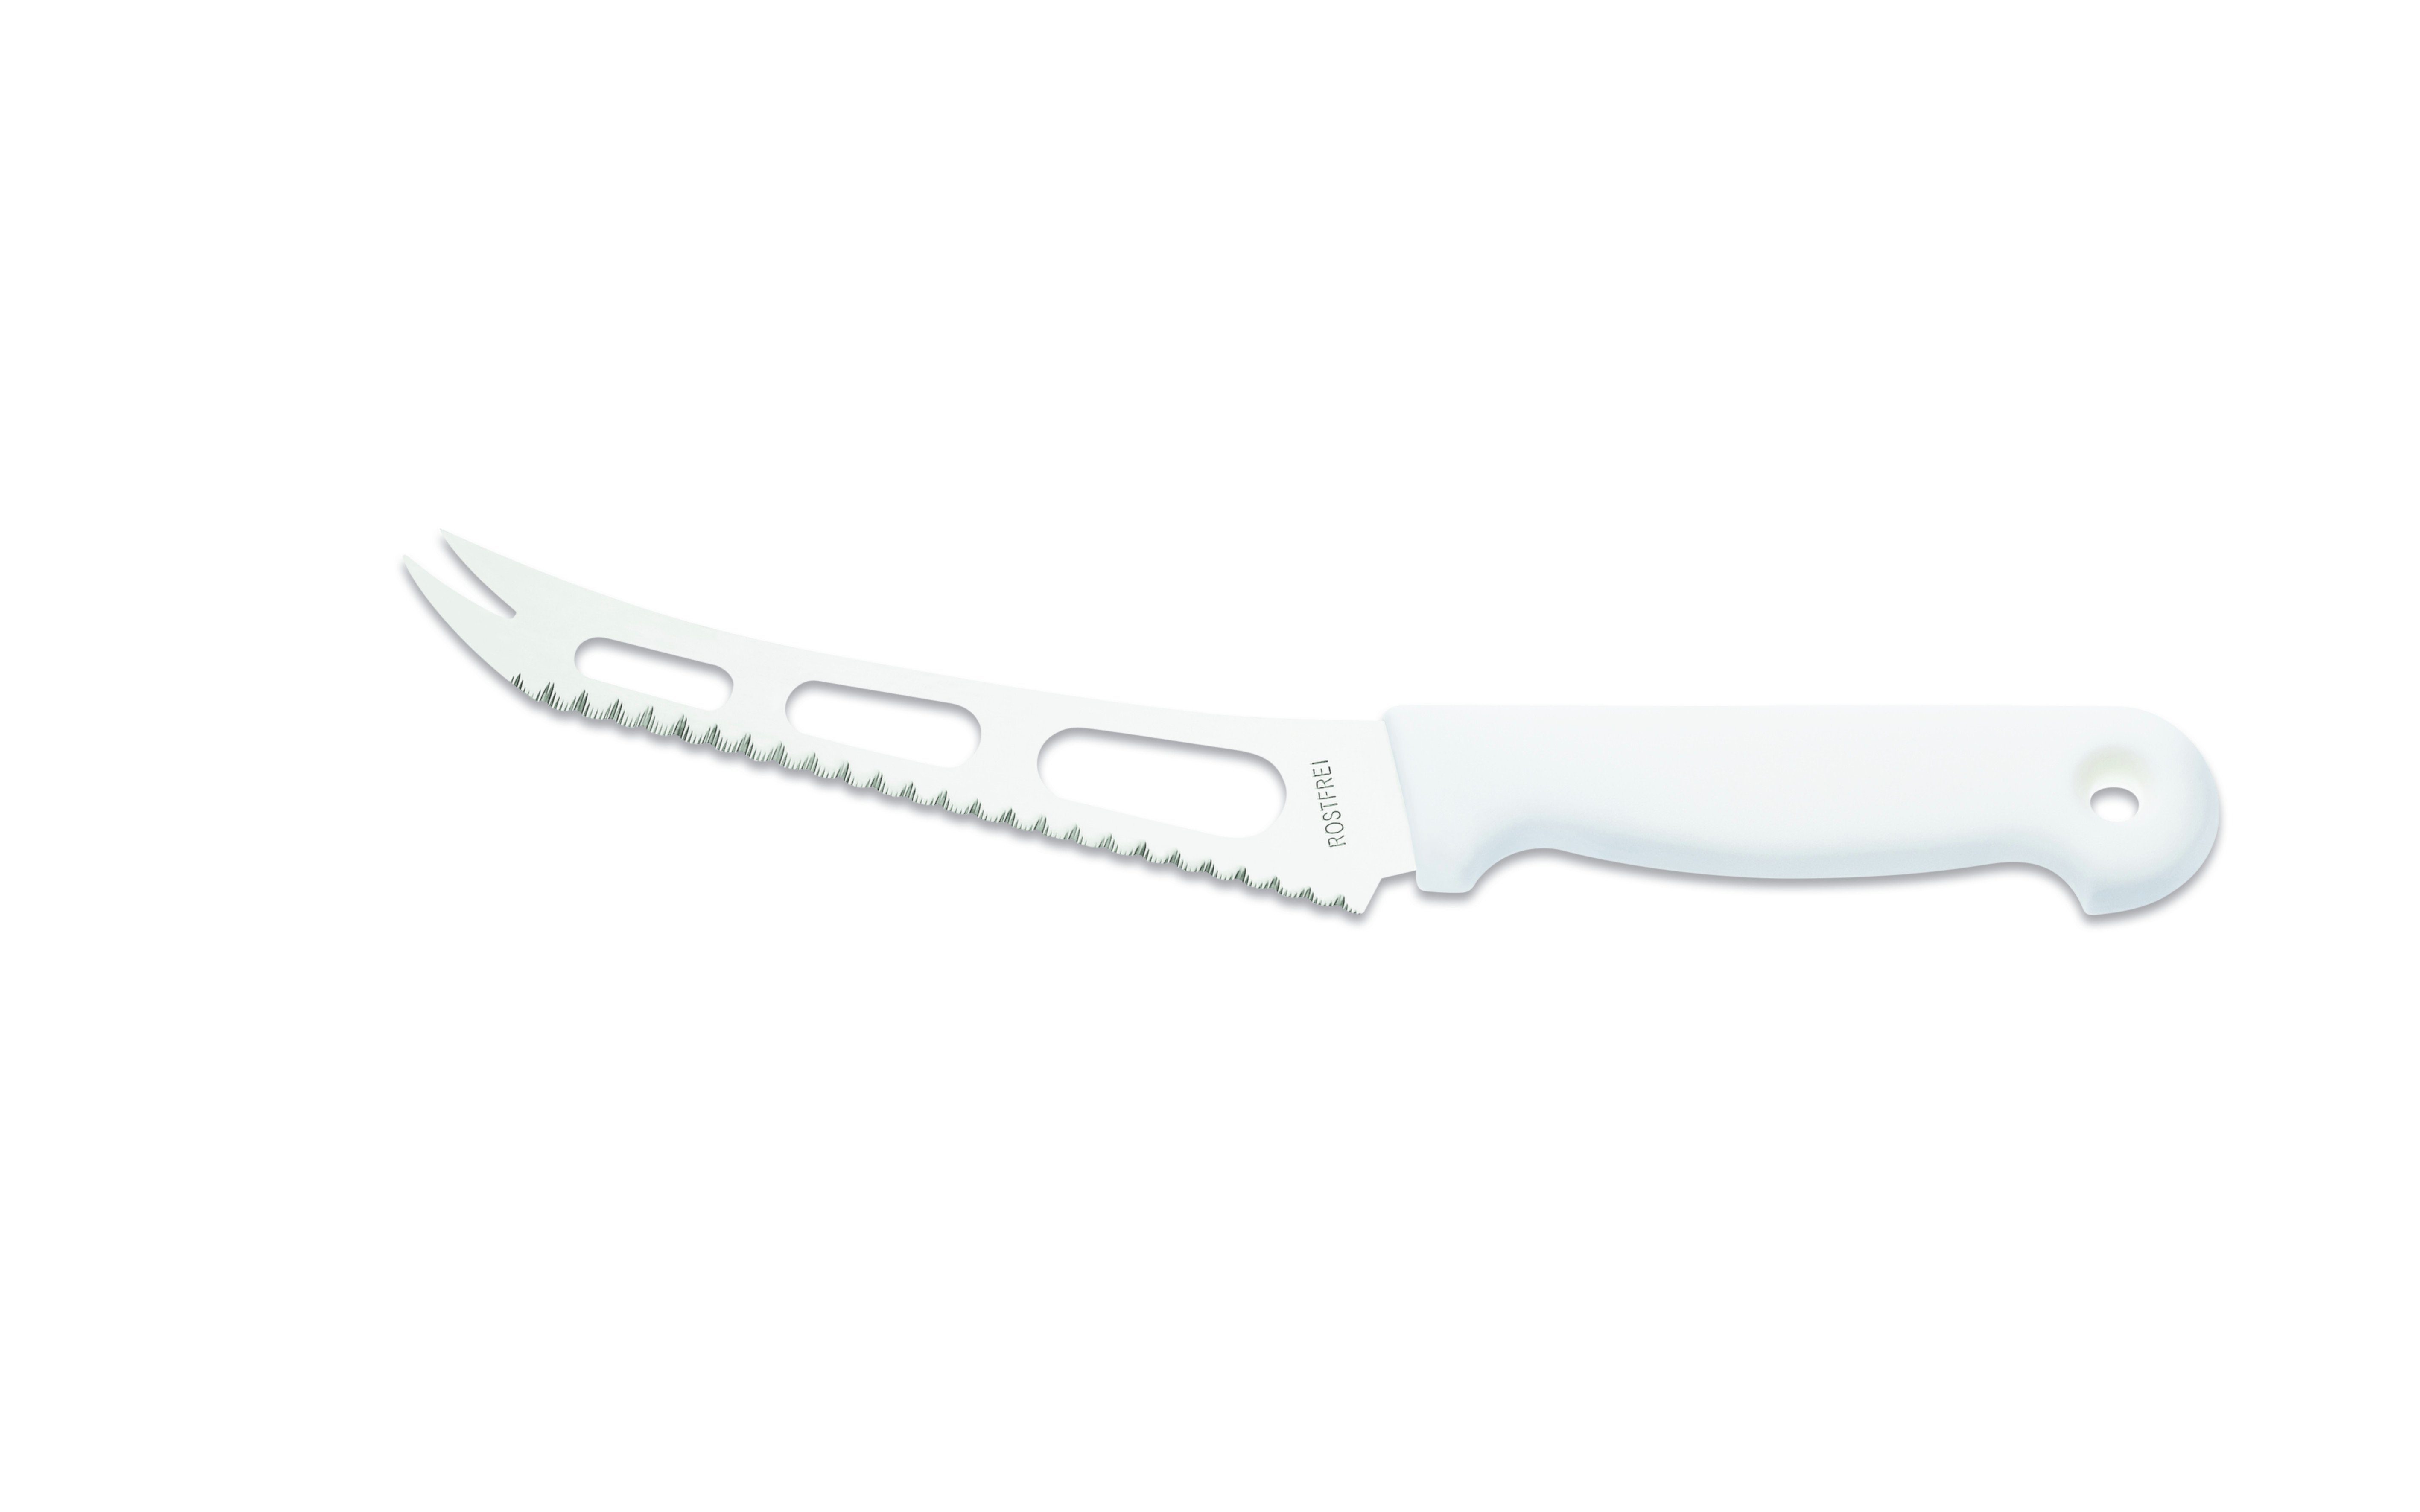 Giesser Messer Käsemesser Weichkäsemesser 9655 sp 15, reibungsarme Aussparungen an der Klinge für alle Käsearten weiß